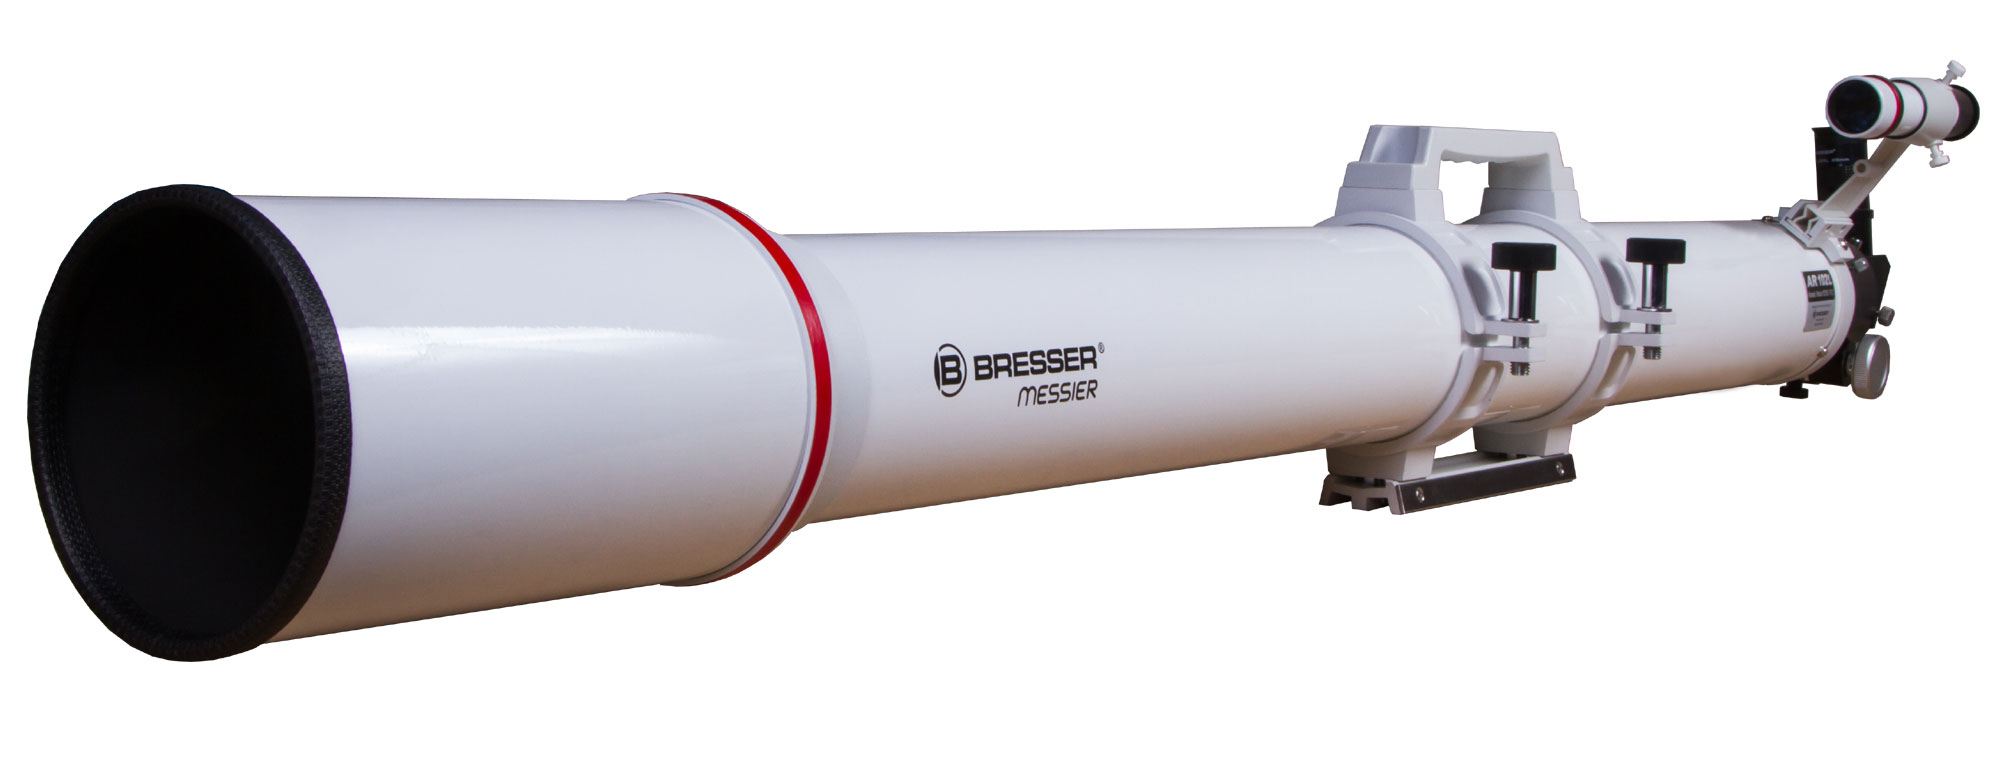 Труба оптическая Bresser (Брессер) Messier AR-102L/1350 Hexafoc 73783 - фото 1